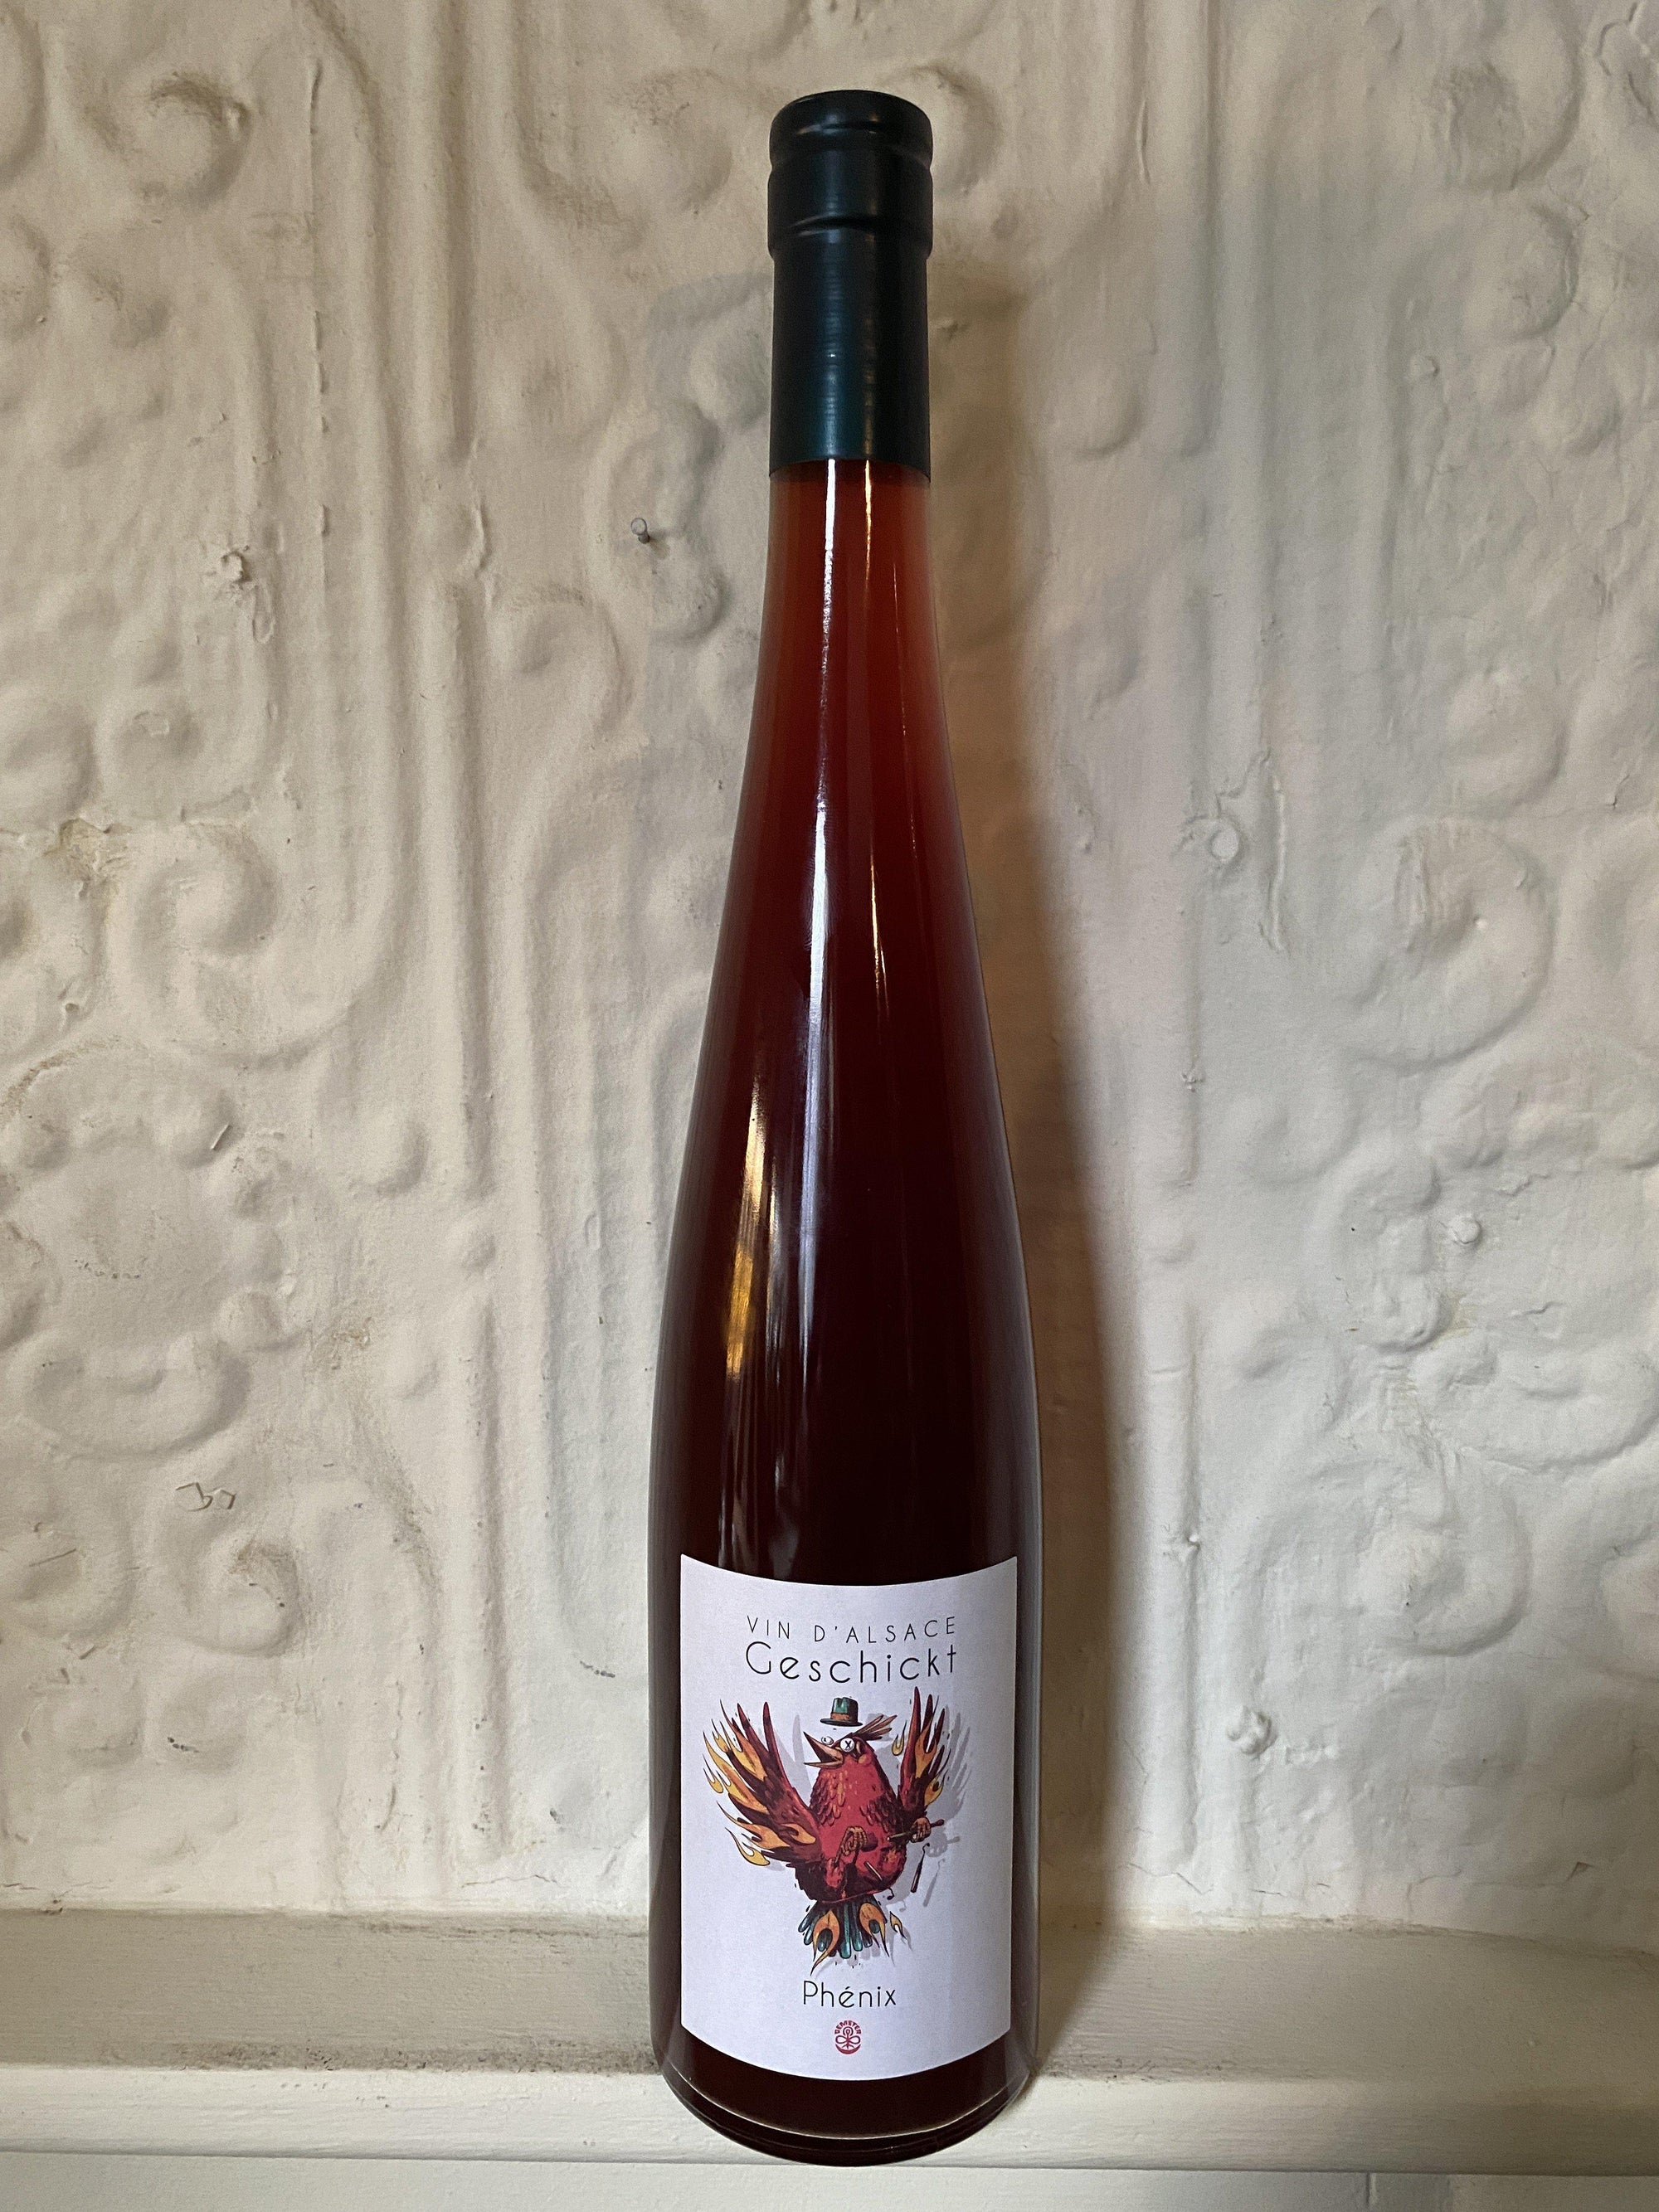 Pinot Gris "Phenix", Domaine Geschickt 2019 (Alsace, France)-Wine-Bibber & Bell